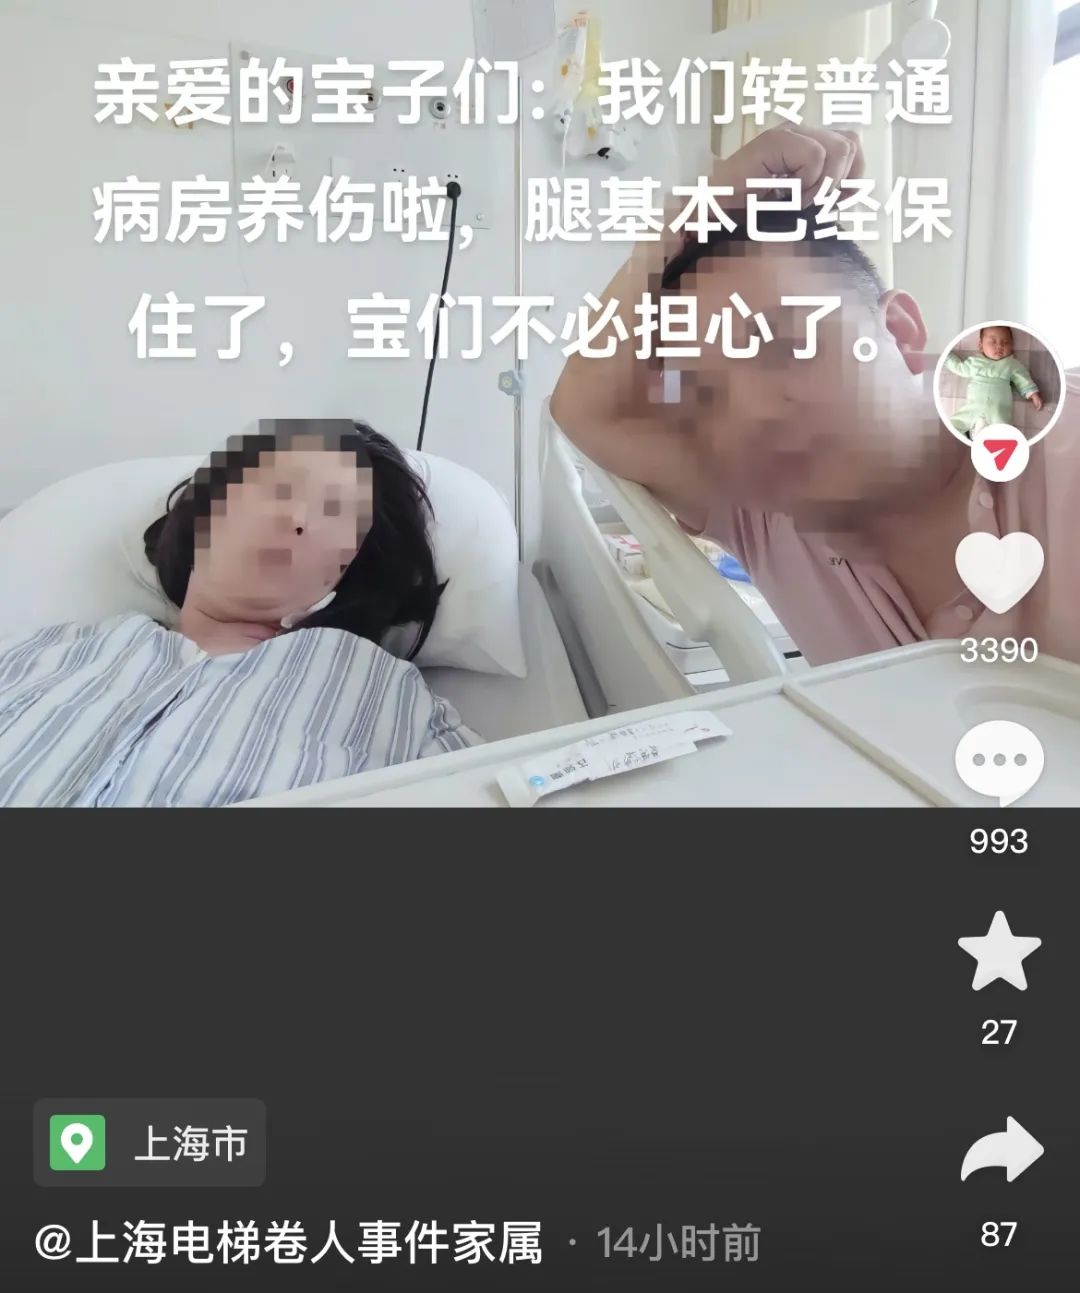 “腿基本已经保住了”！上海“扶梯卷人”事件伤者最新情况